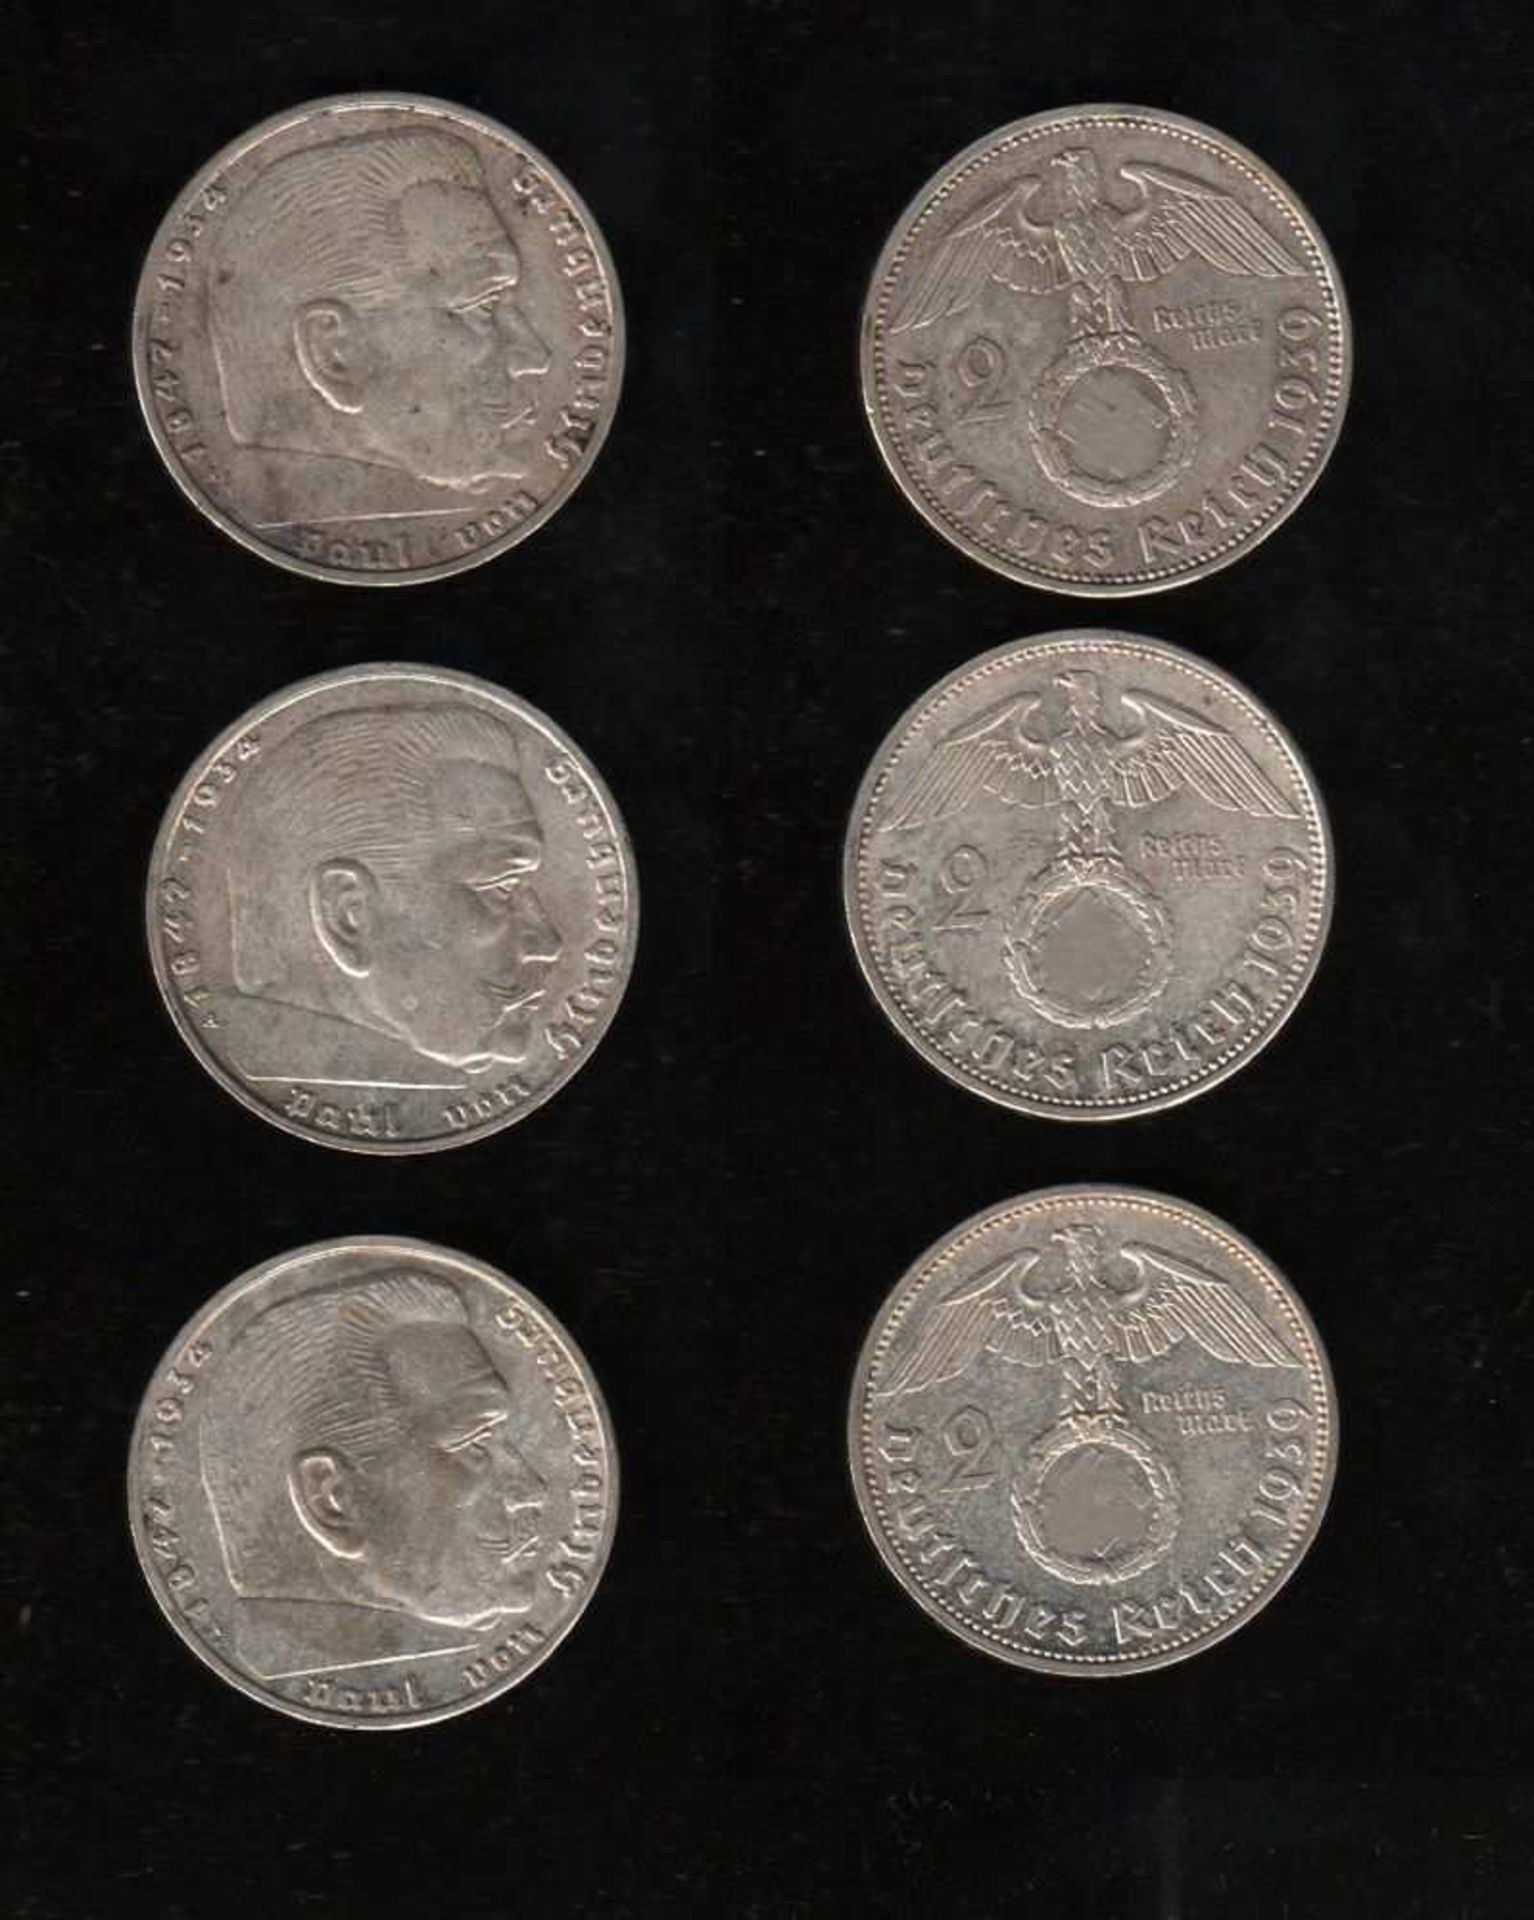 # Deutsches Reich. 240 Silbermünzen zu 2 Reichsmark. Paul von Hindenburg. 1937 - 1939.